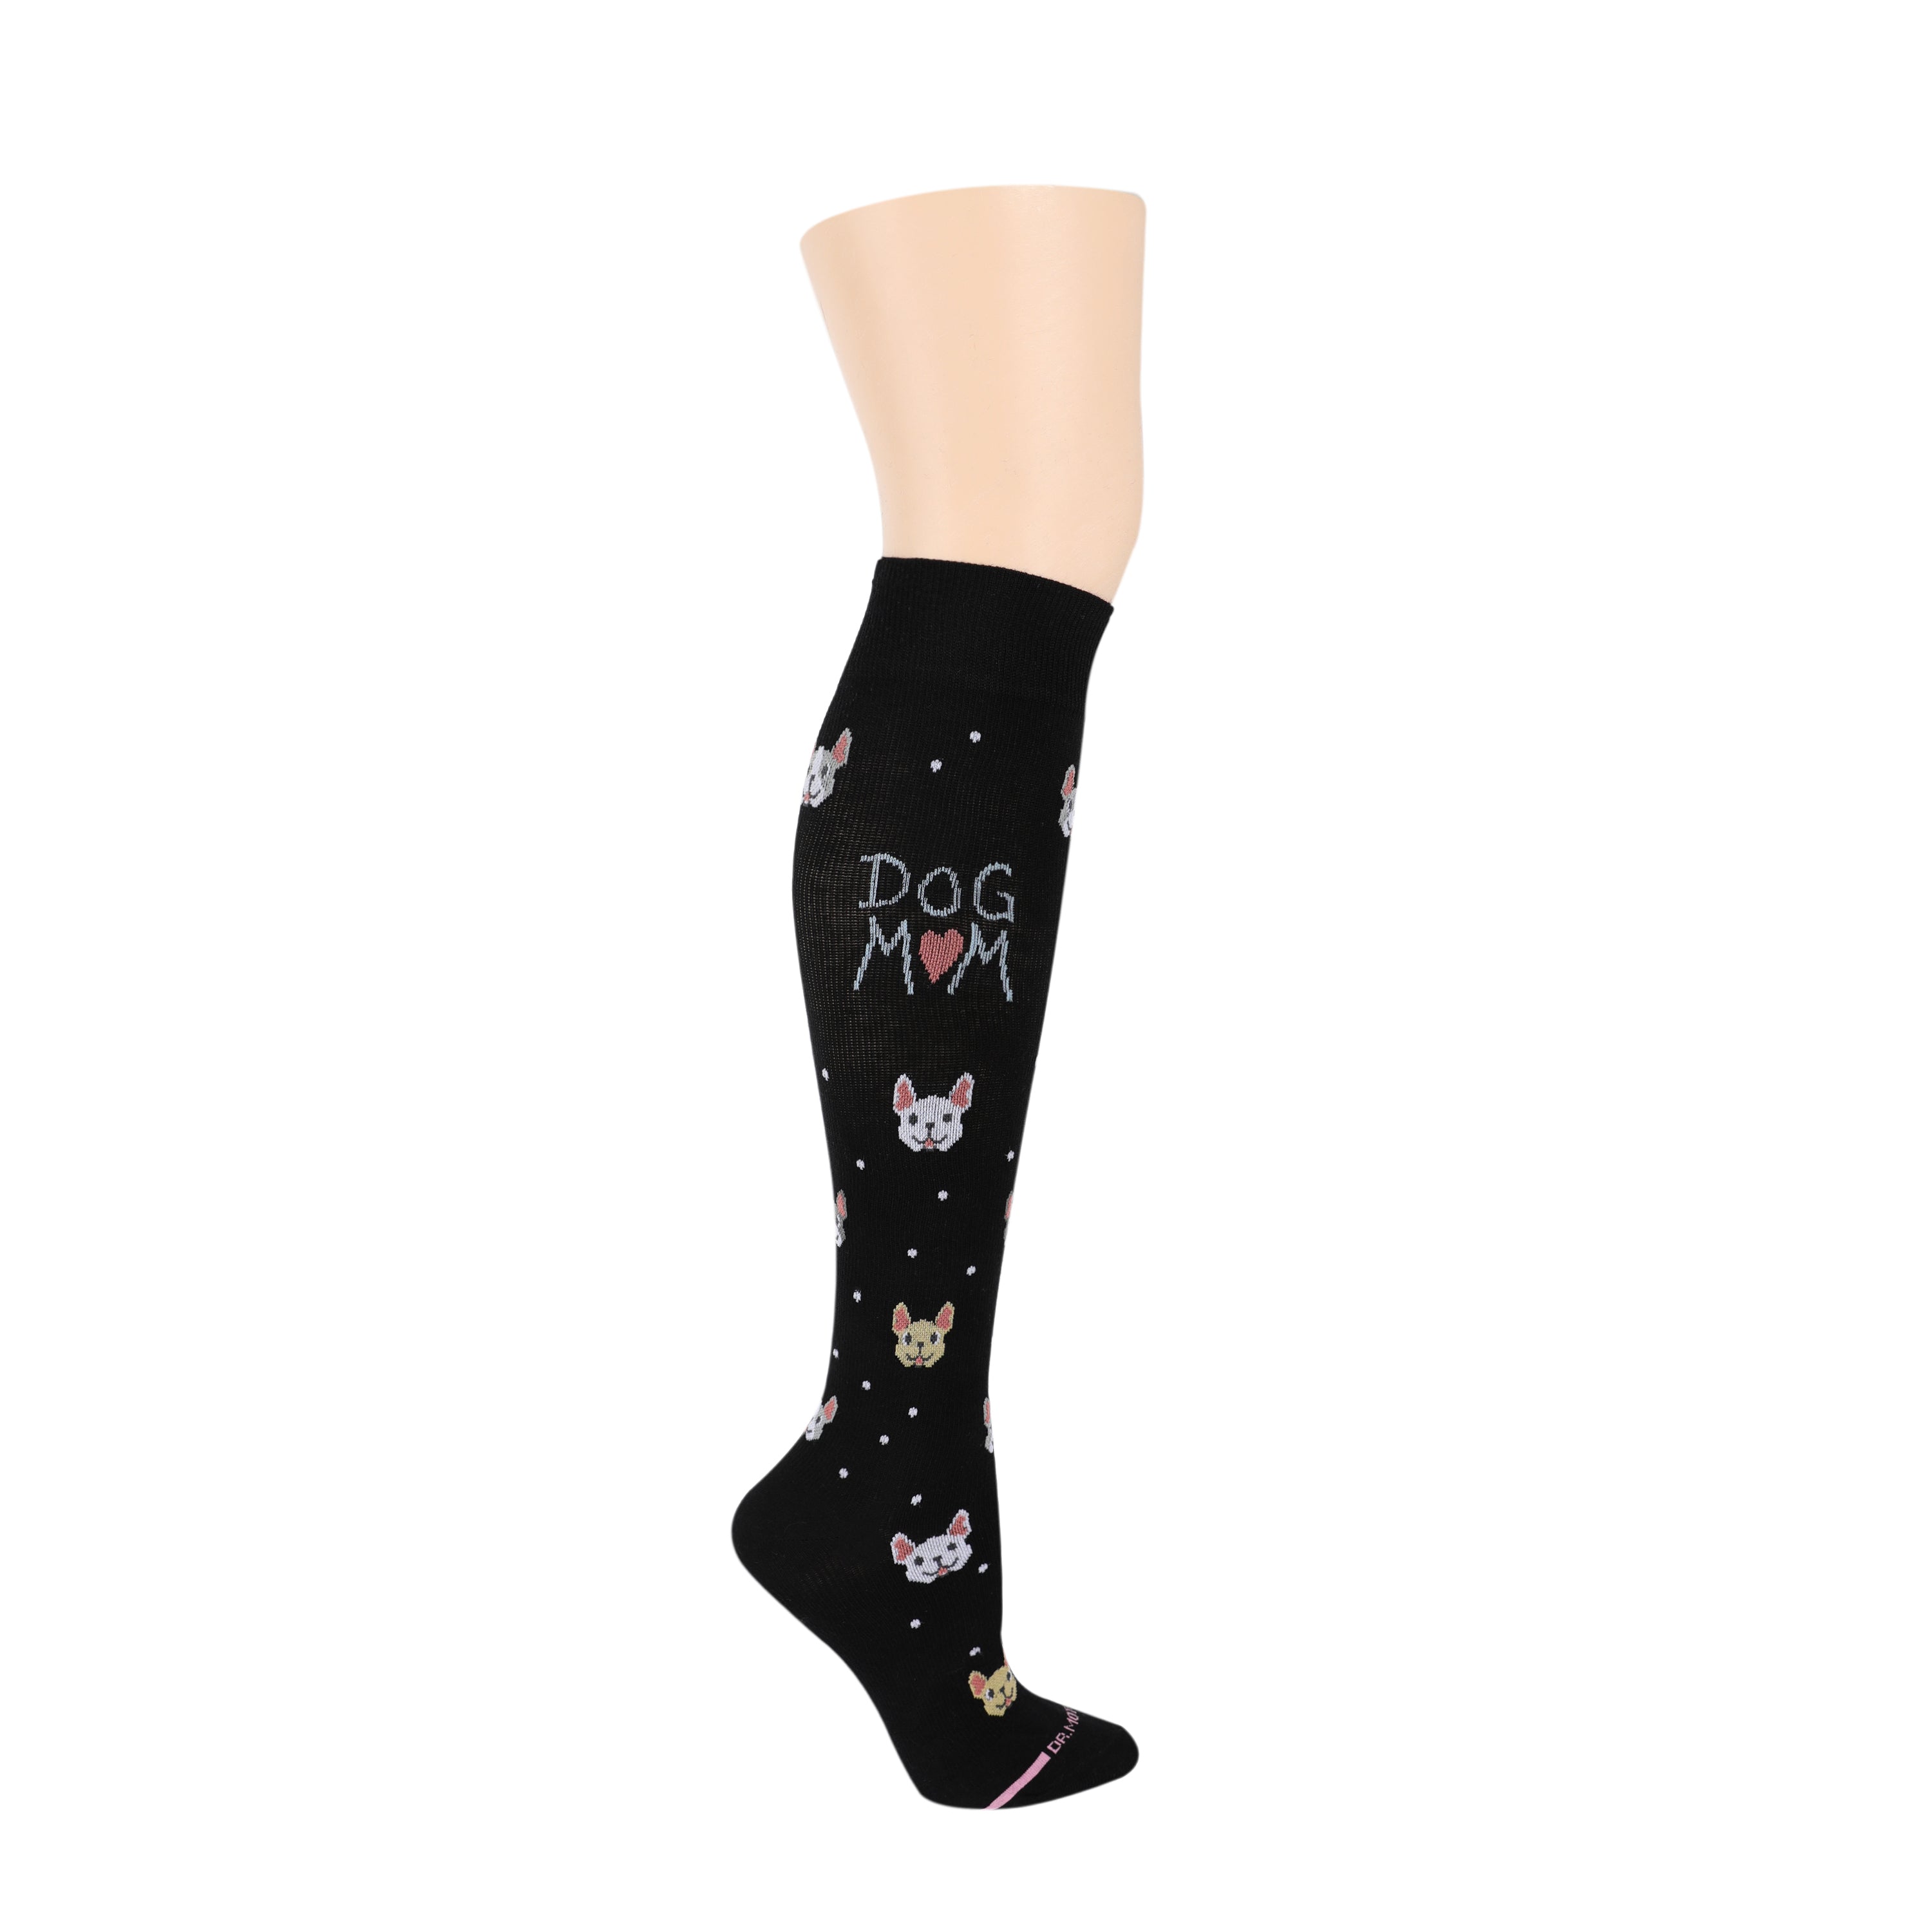 Knee-High Compression Socks For Women | Dr. Motion | Dog Mom